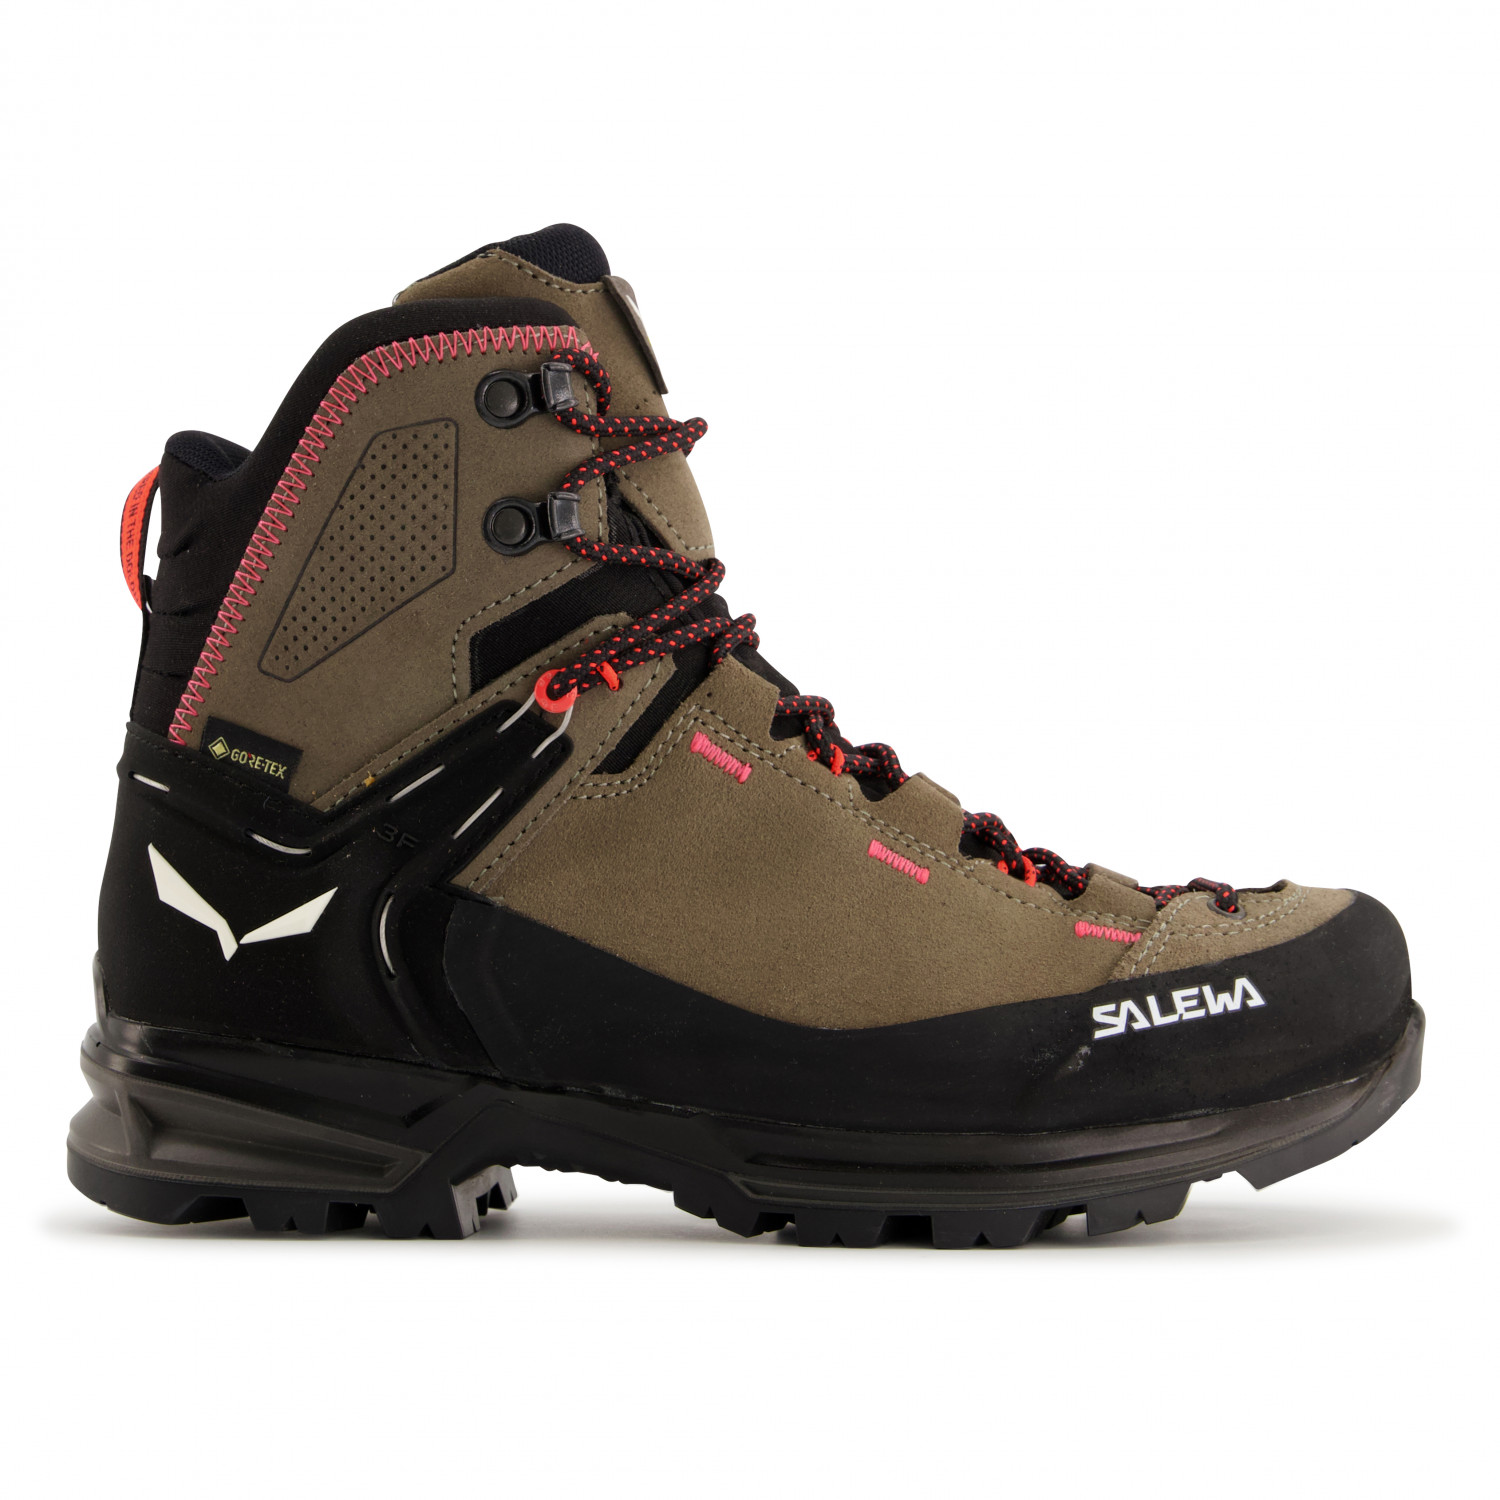 Ботинки для прогулки Salewa Women's Mountain Trainer 2 Mid GTX, цвет Bungee Cord/Black